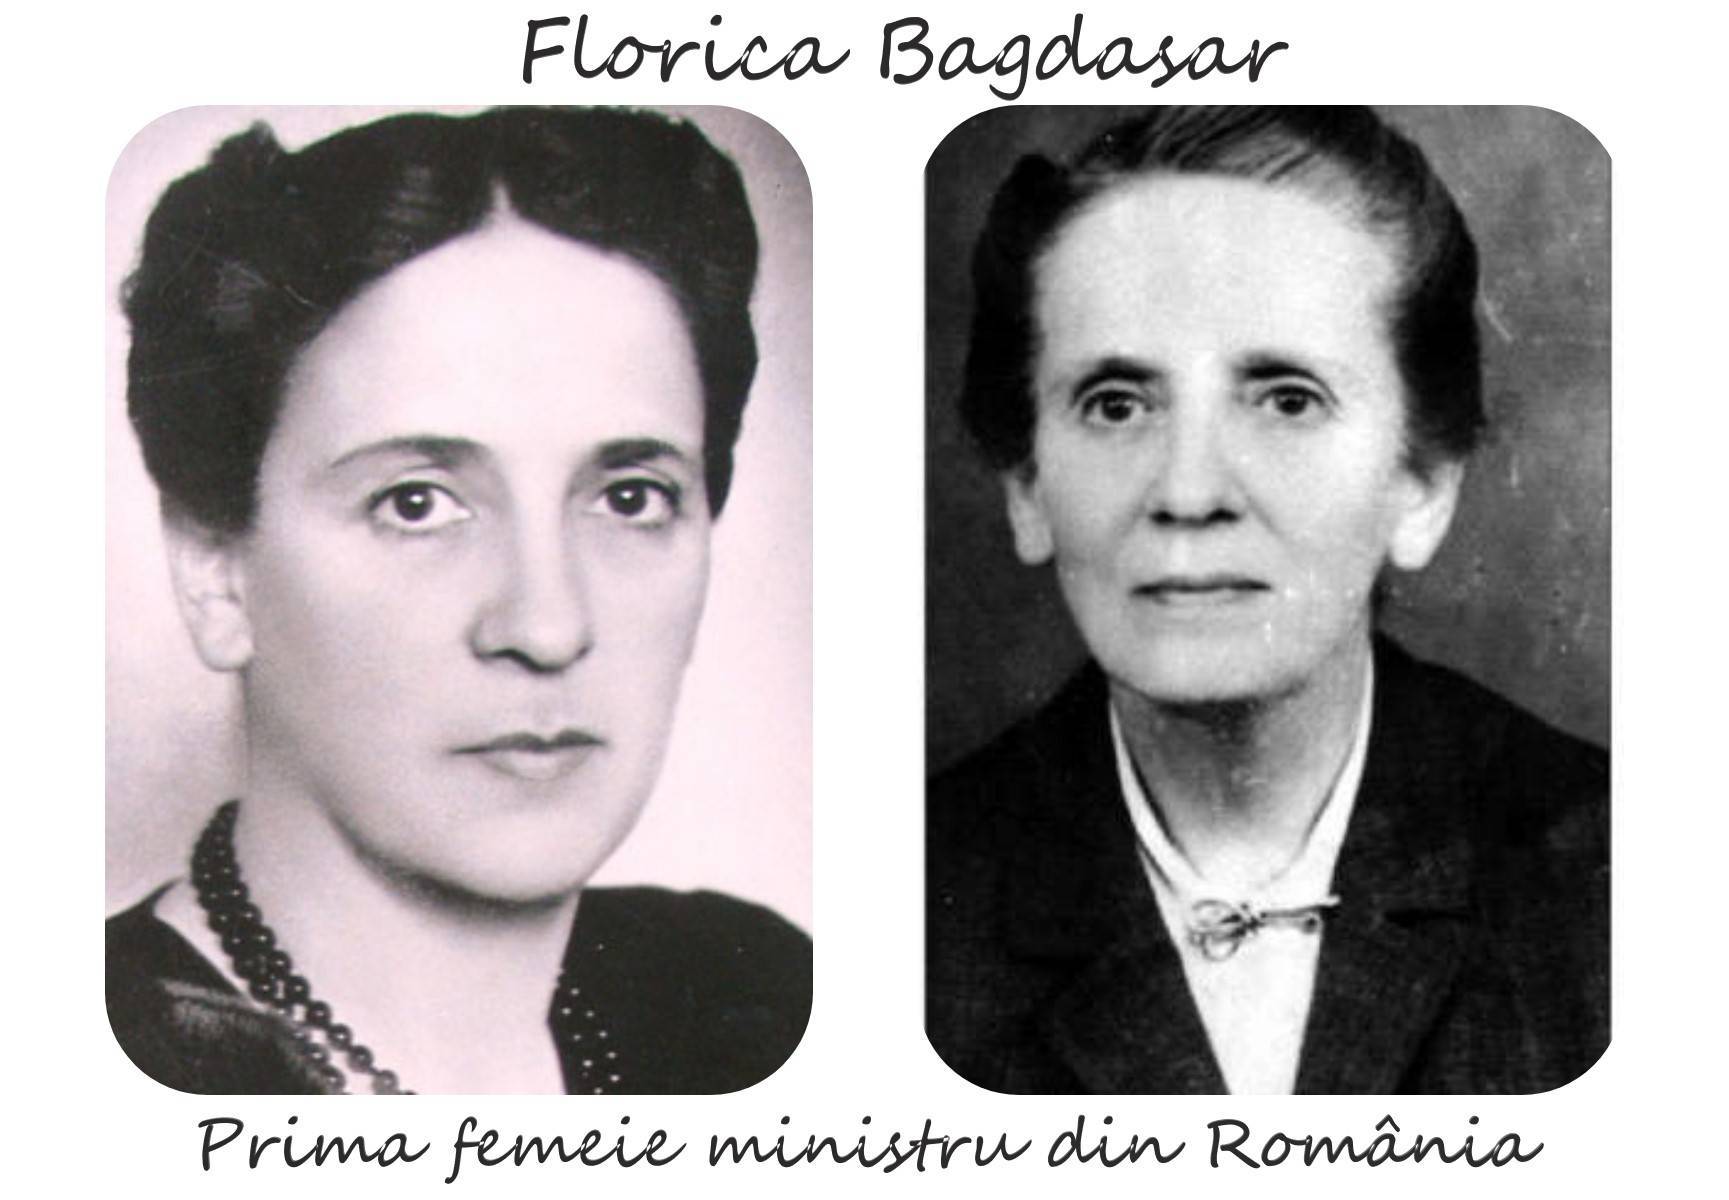 Florica Bagdasar. Povestea fără de cusur a primei femei ministru, persecutată de comuniști